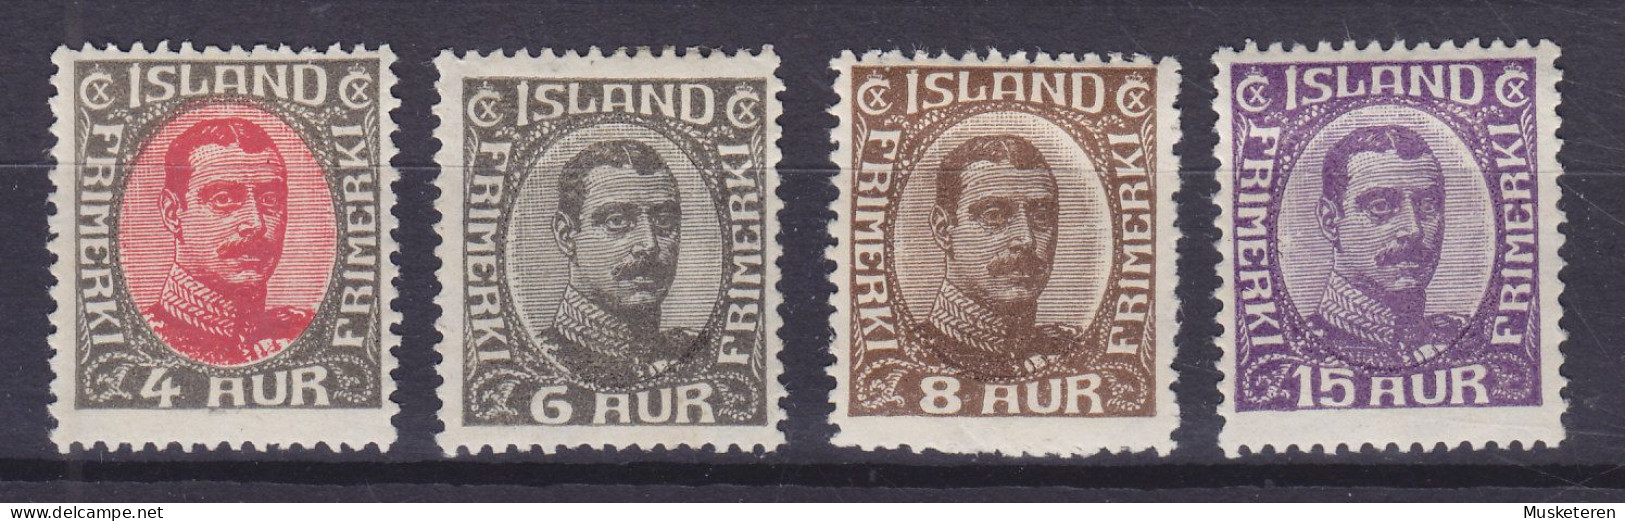 Iceland 1920 Mi. 85, 87-88, 90, 4 Aur, 6 Aur, 8 Aur, 15 Aur Christian X., MH* (2 Scans) - Neufs